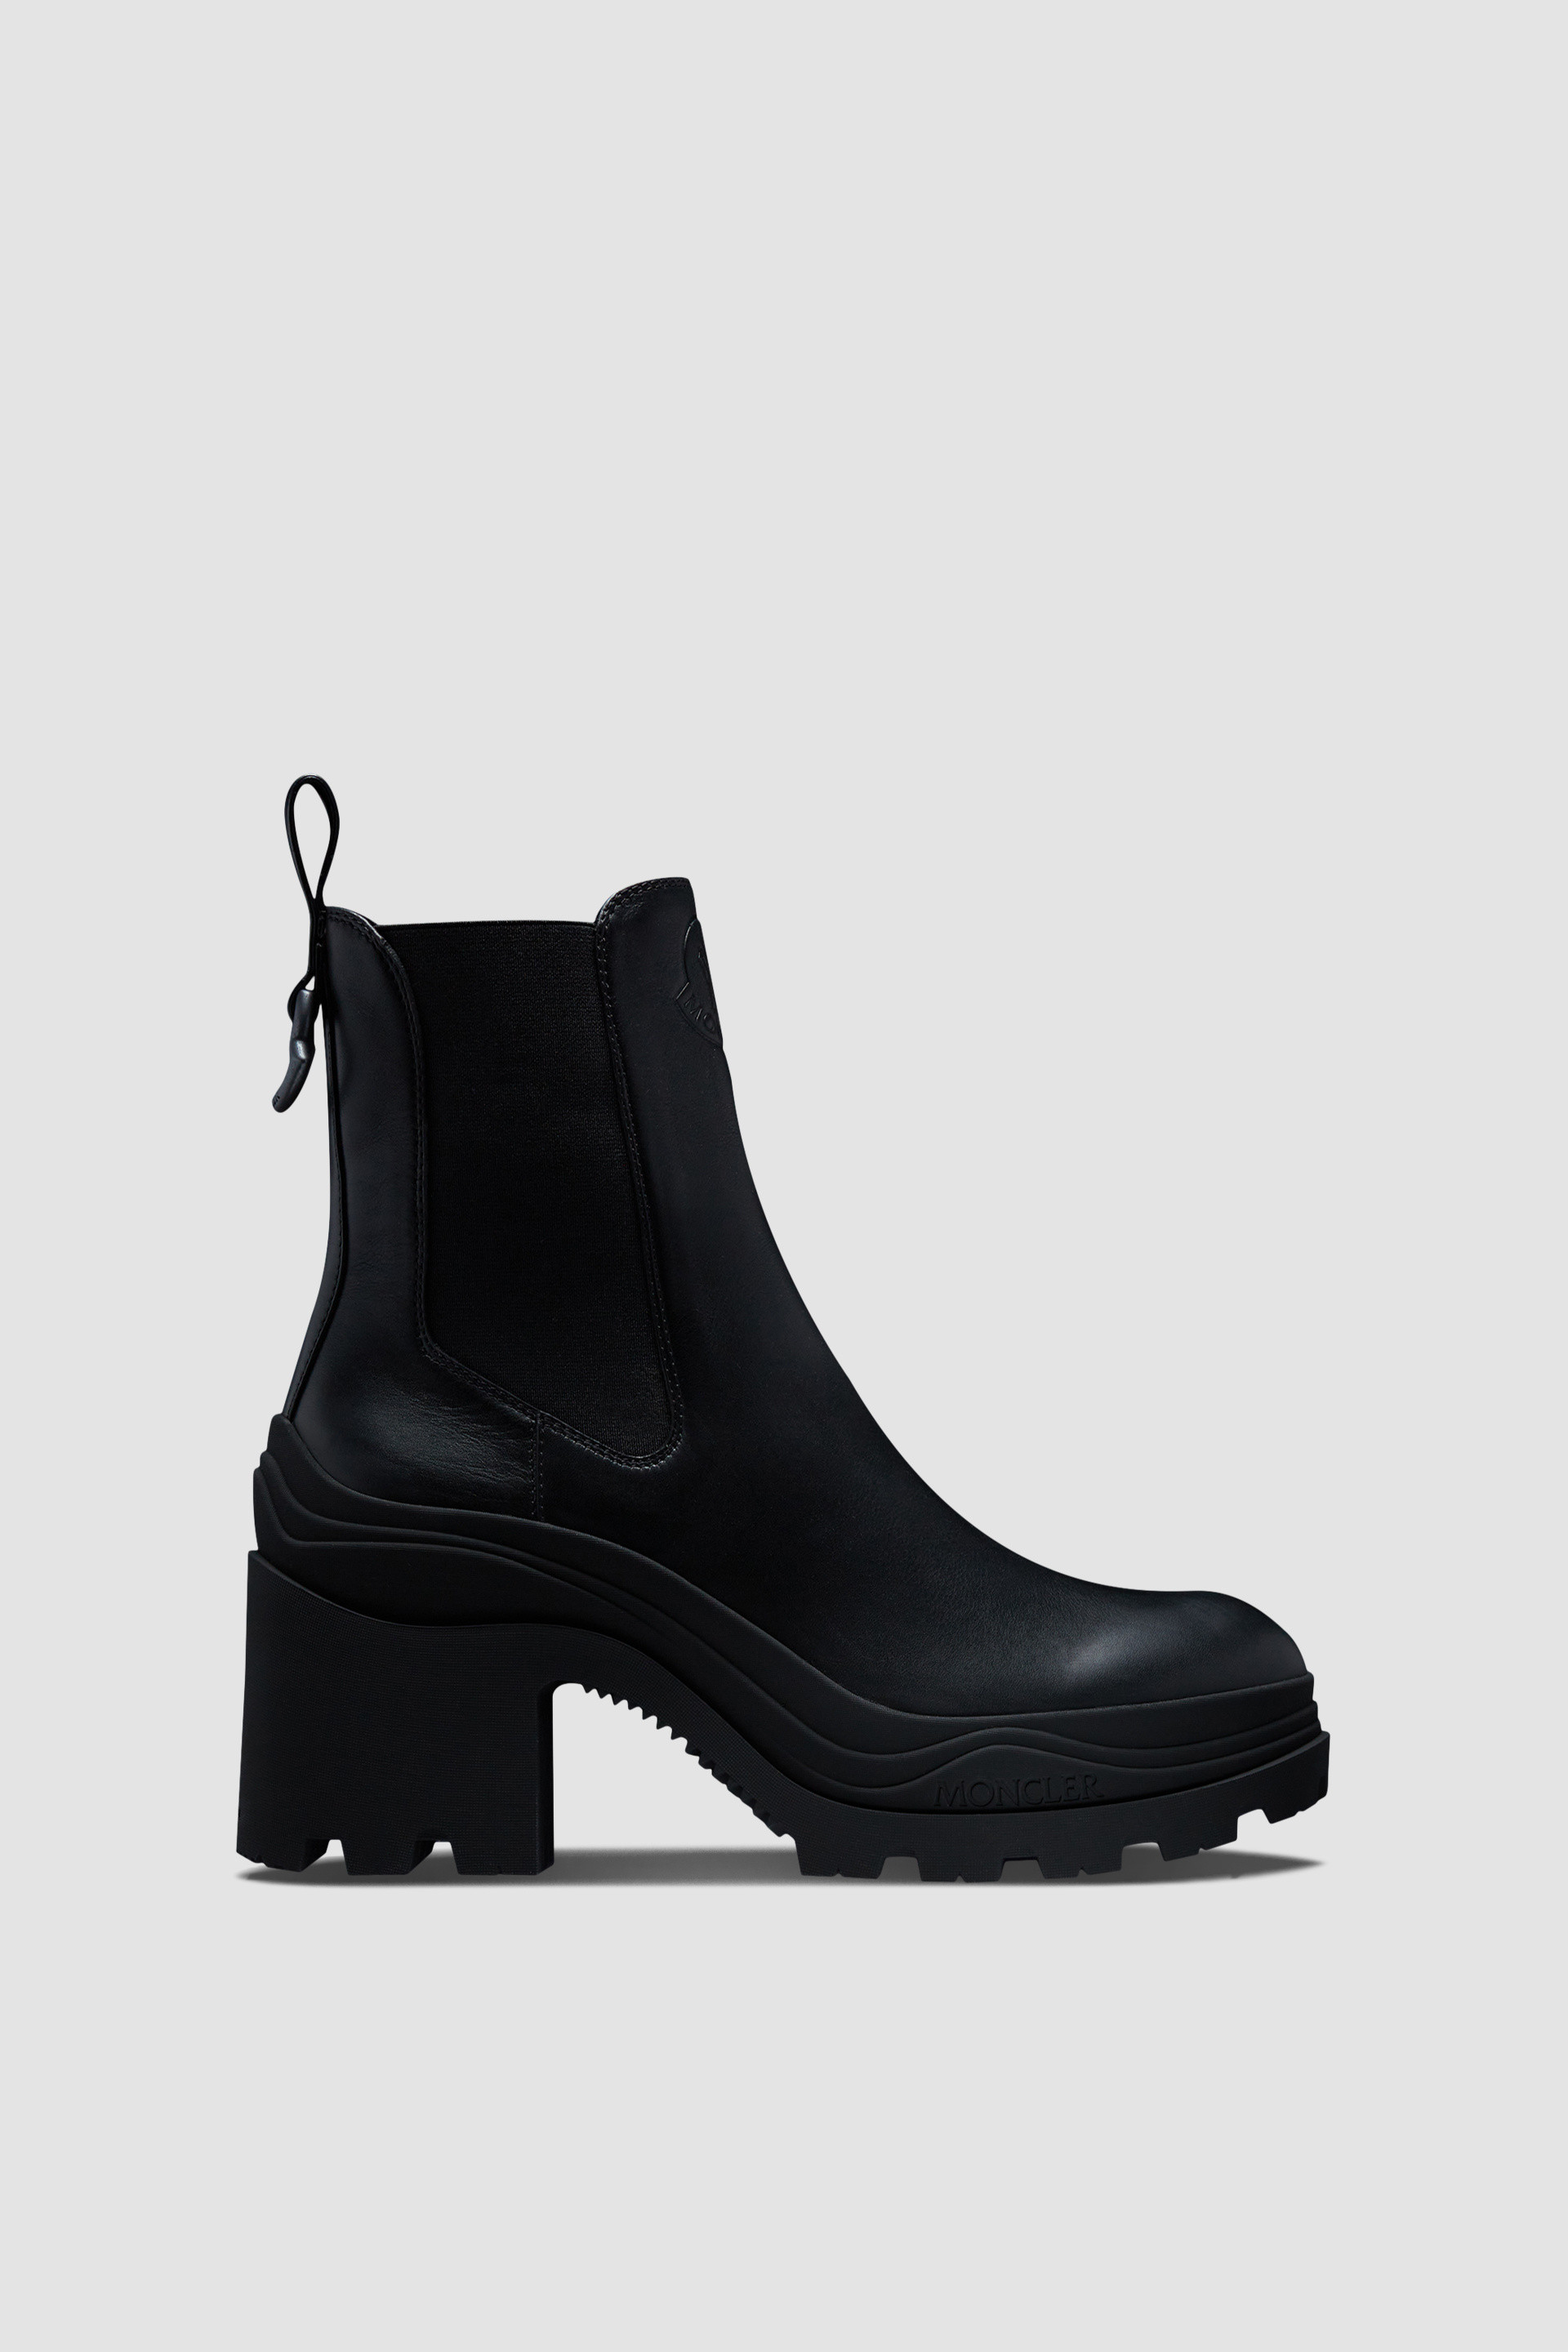 Black Envile Chelsea Boots - Boots for Women | Moncler SG